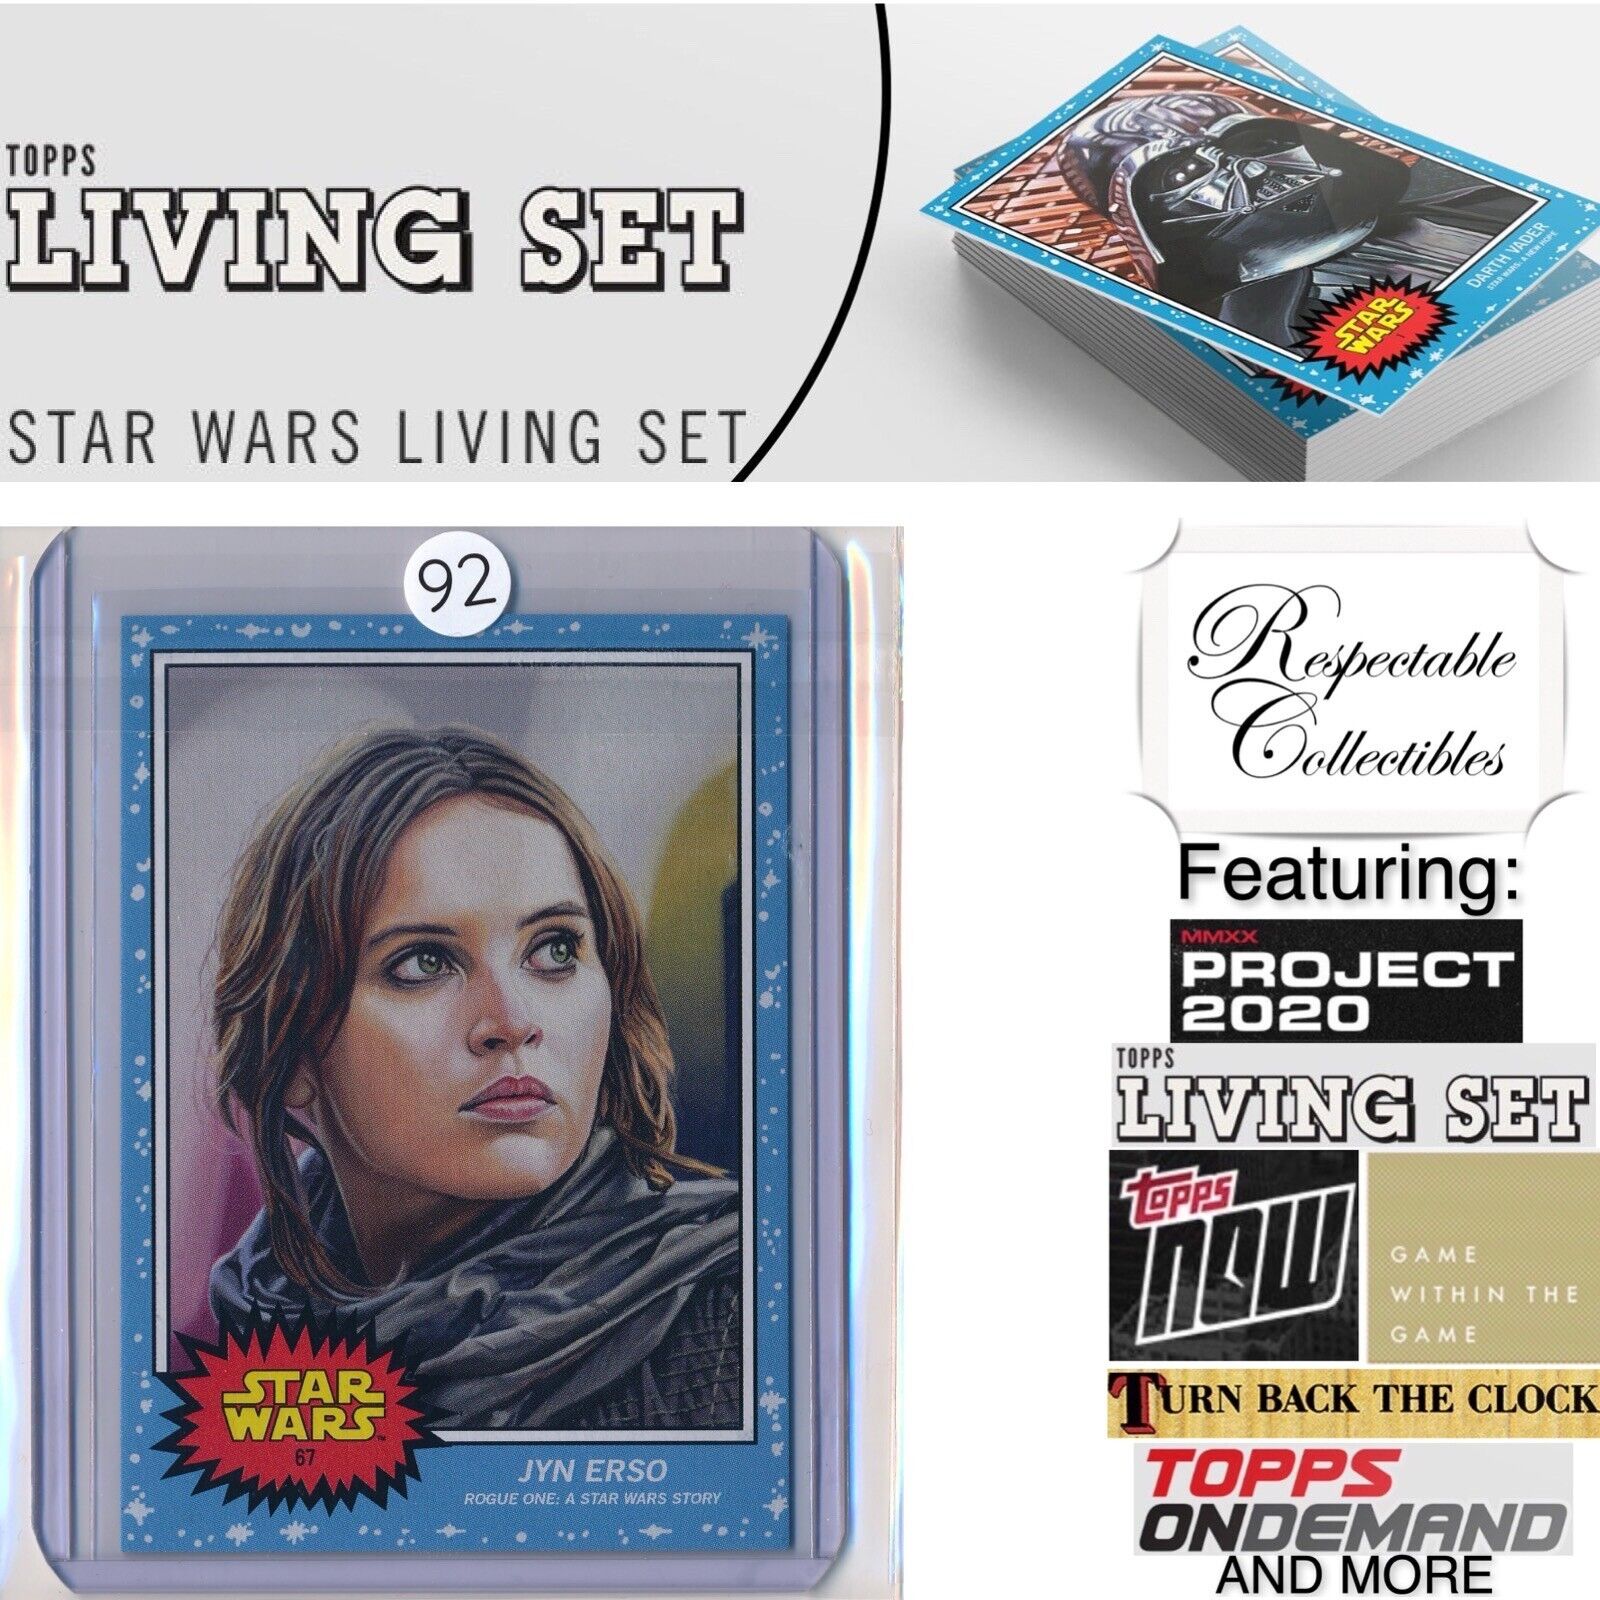 2020 Topps Star Wars Living Set - Card #67 Jyn Erso (Felicity Jones) Rogue One